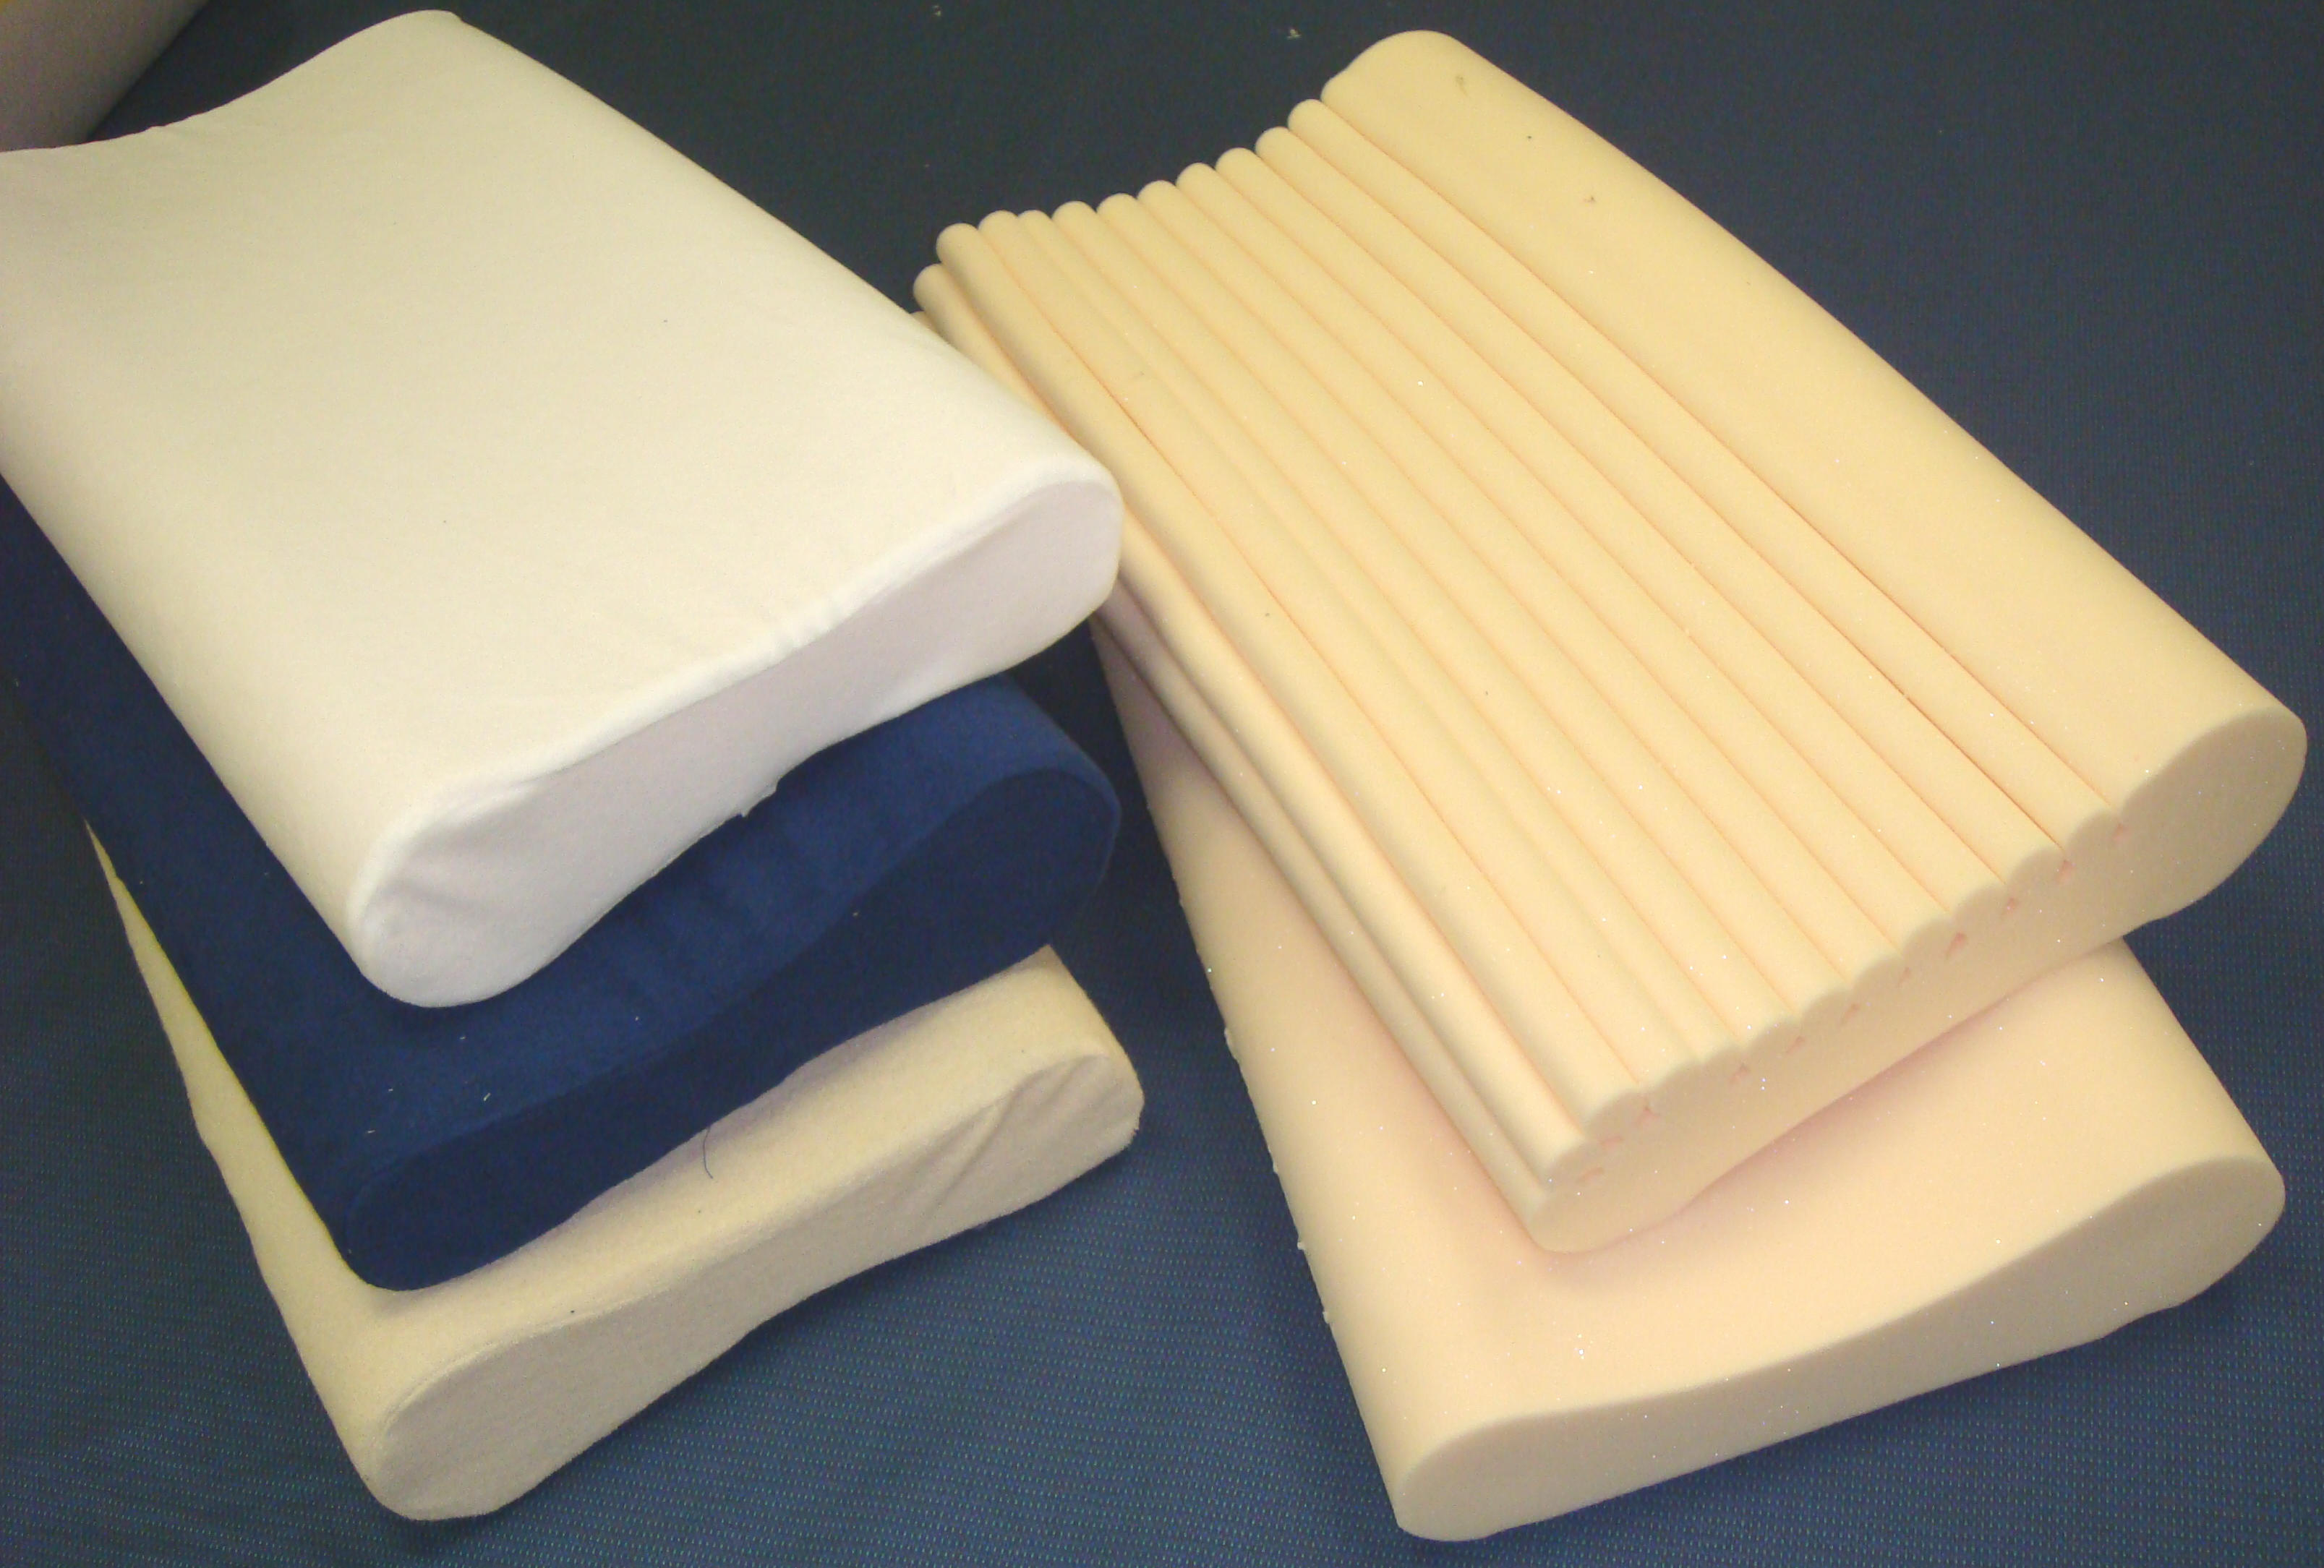 bets pillow for memory foam mattress